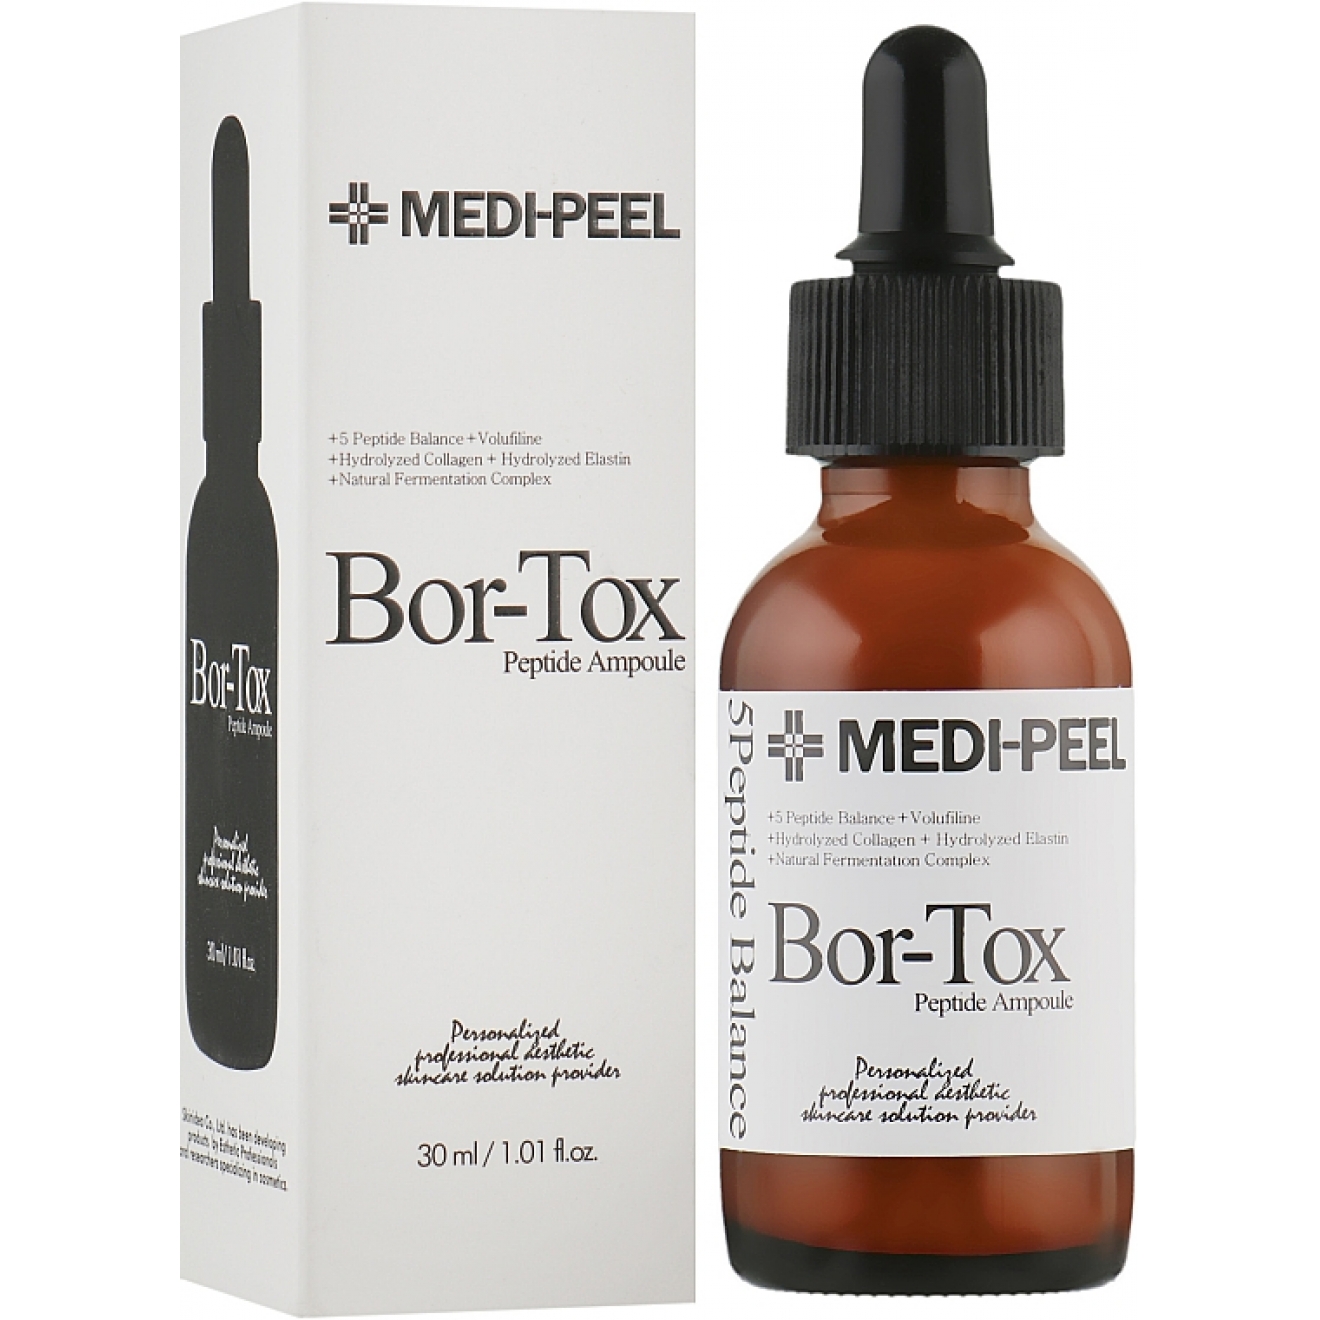 Мультипептидная омолаживающая сыворотка-Medi-Peel, Bor-Tox Peptide Ampoule, 30ml